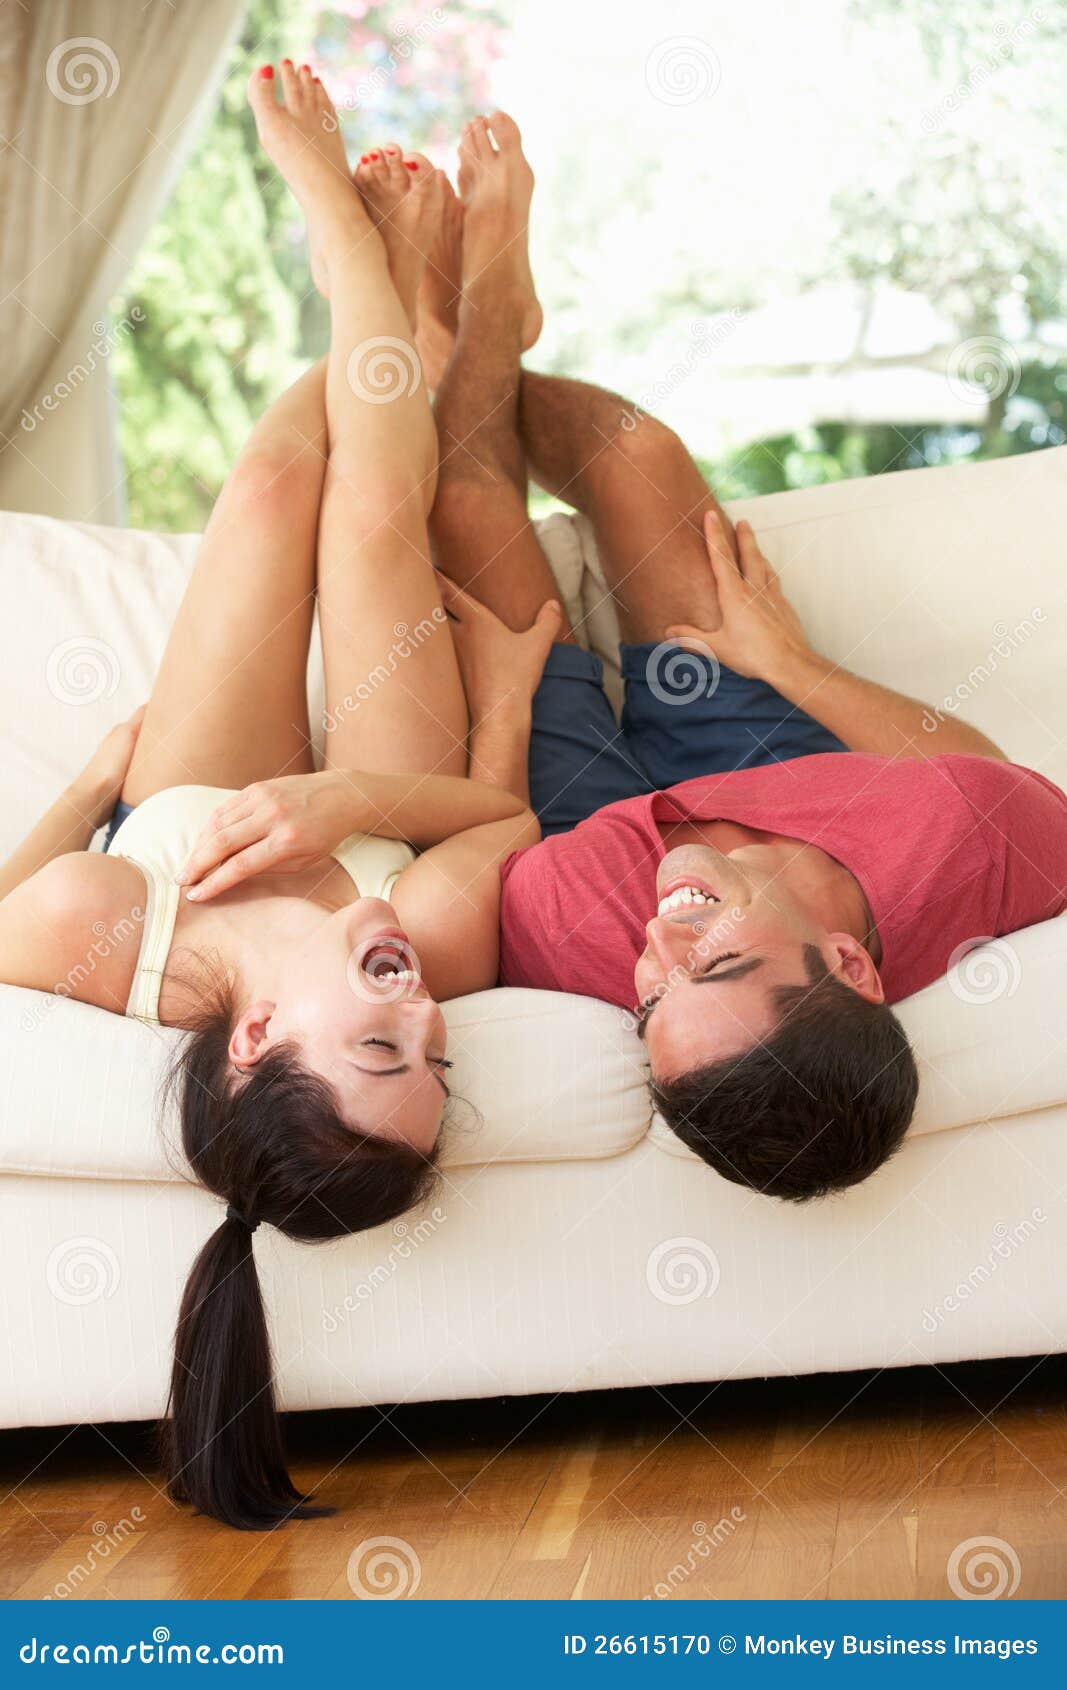 Жена с чувственными ногами. Пара лежит. Лежать на диване вверх ногами. Поза на диване к верх ногами. Поза девушка на диване с мужчиной.